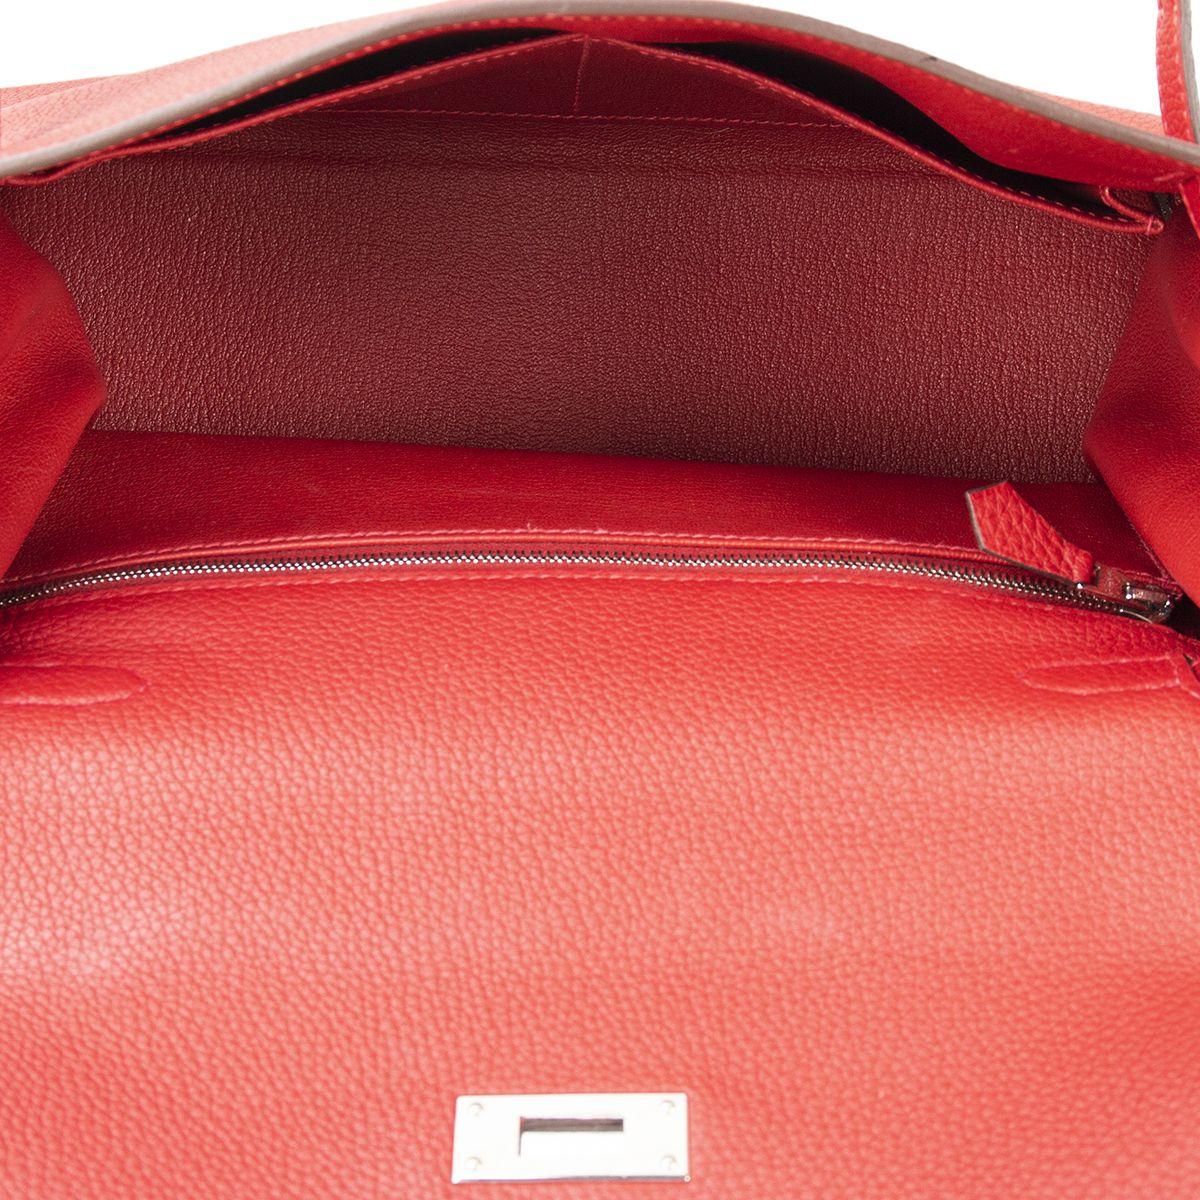 HERMES Rouge Garance red Togo leather KELLY 28 RETOURNE Bag 1